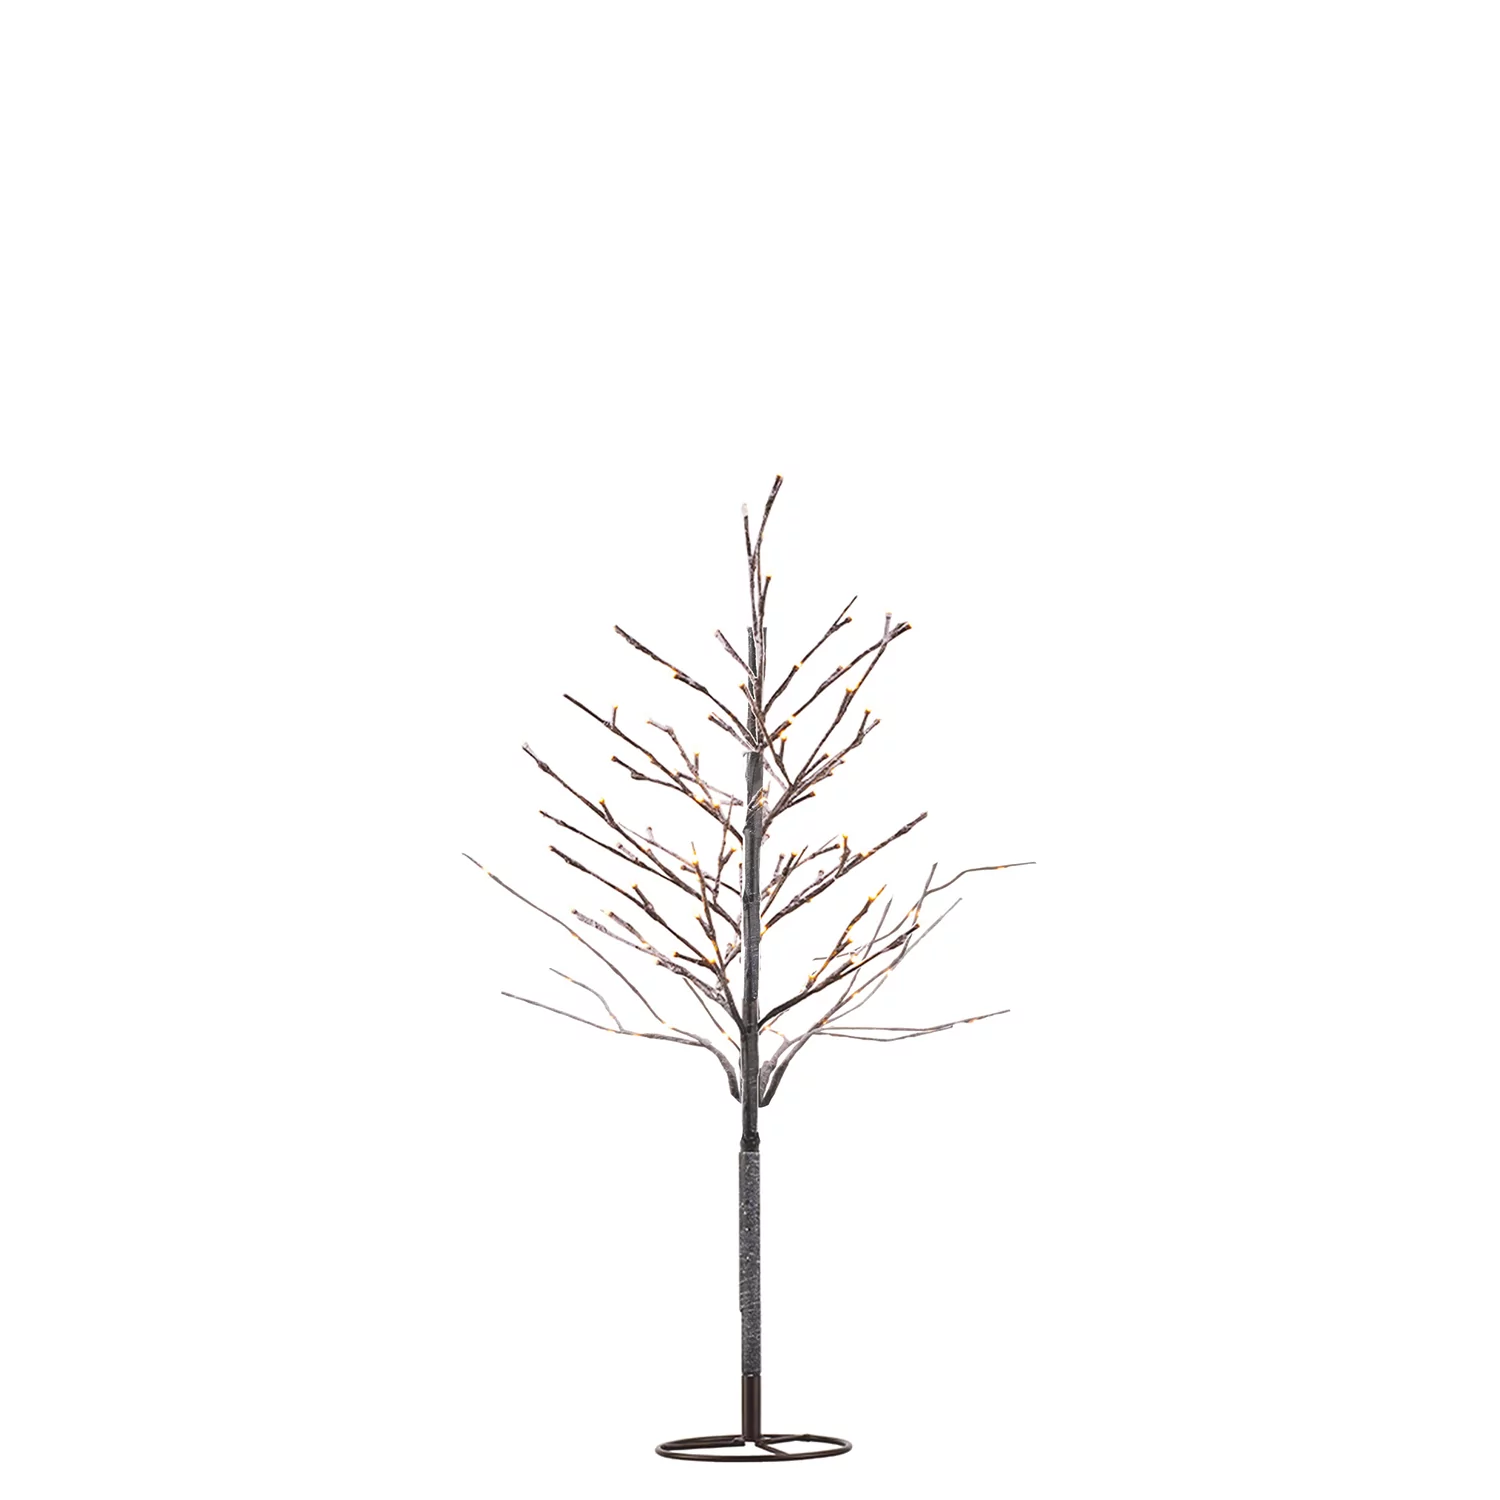 Sirius Alex Tree LED-Lichterbaum – sofort lieferbar! 